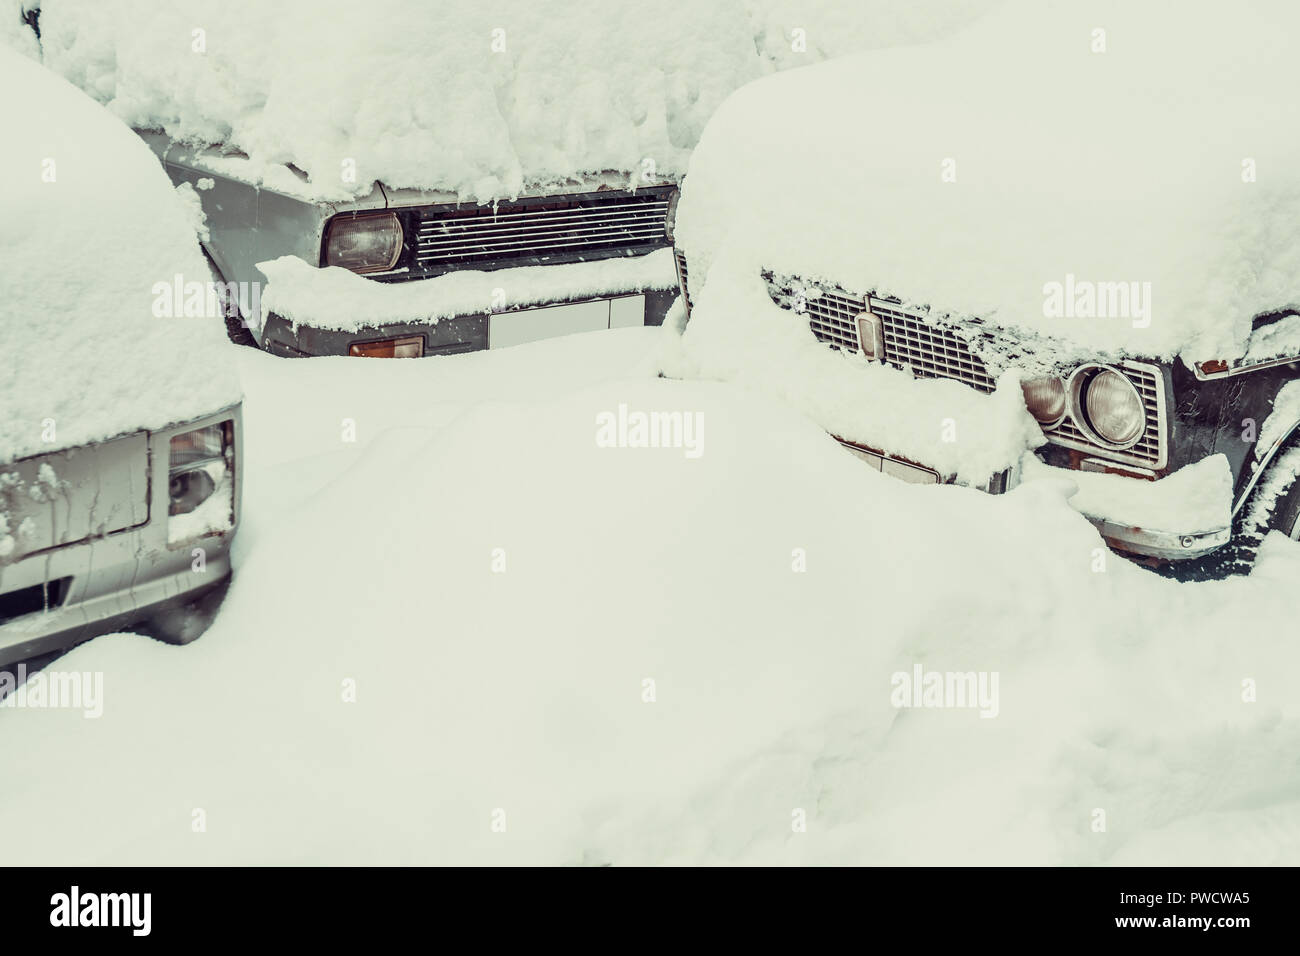 Auto komplett hinter einer dicken Schicht Schnee versteckt Stockfoto